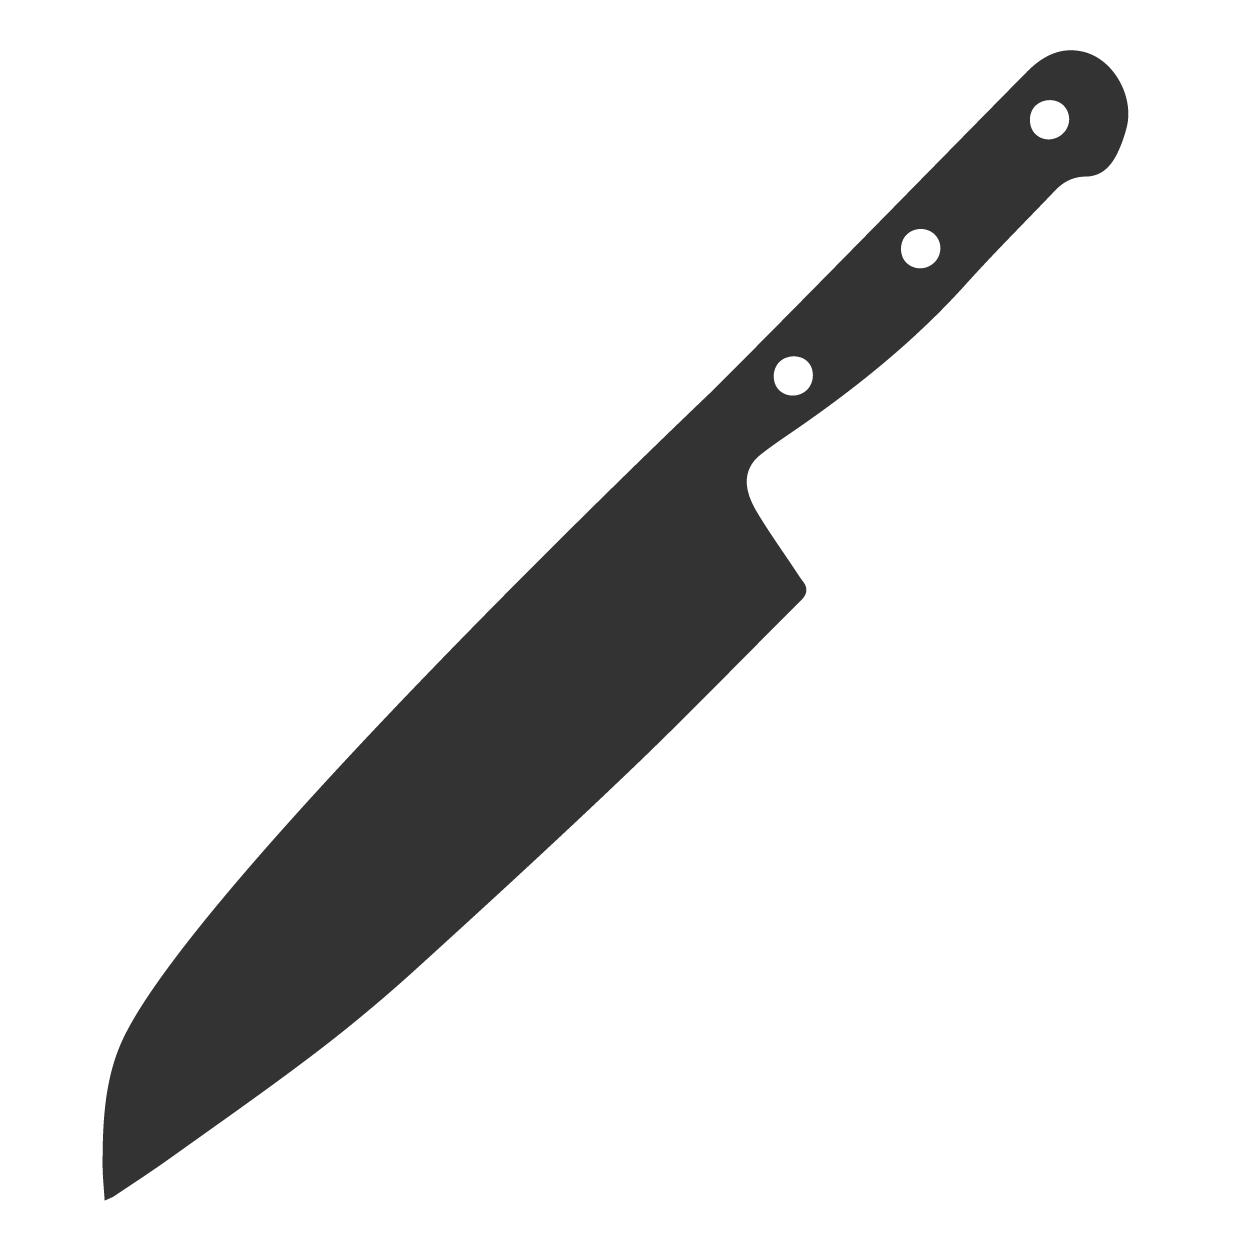 Couteaux & Accessoires - Kotai